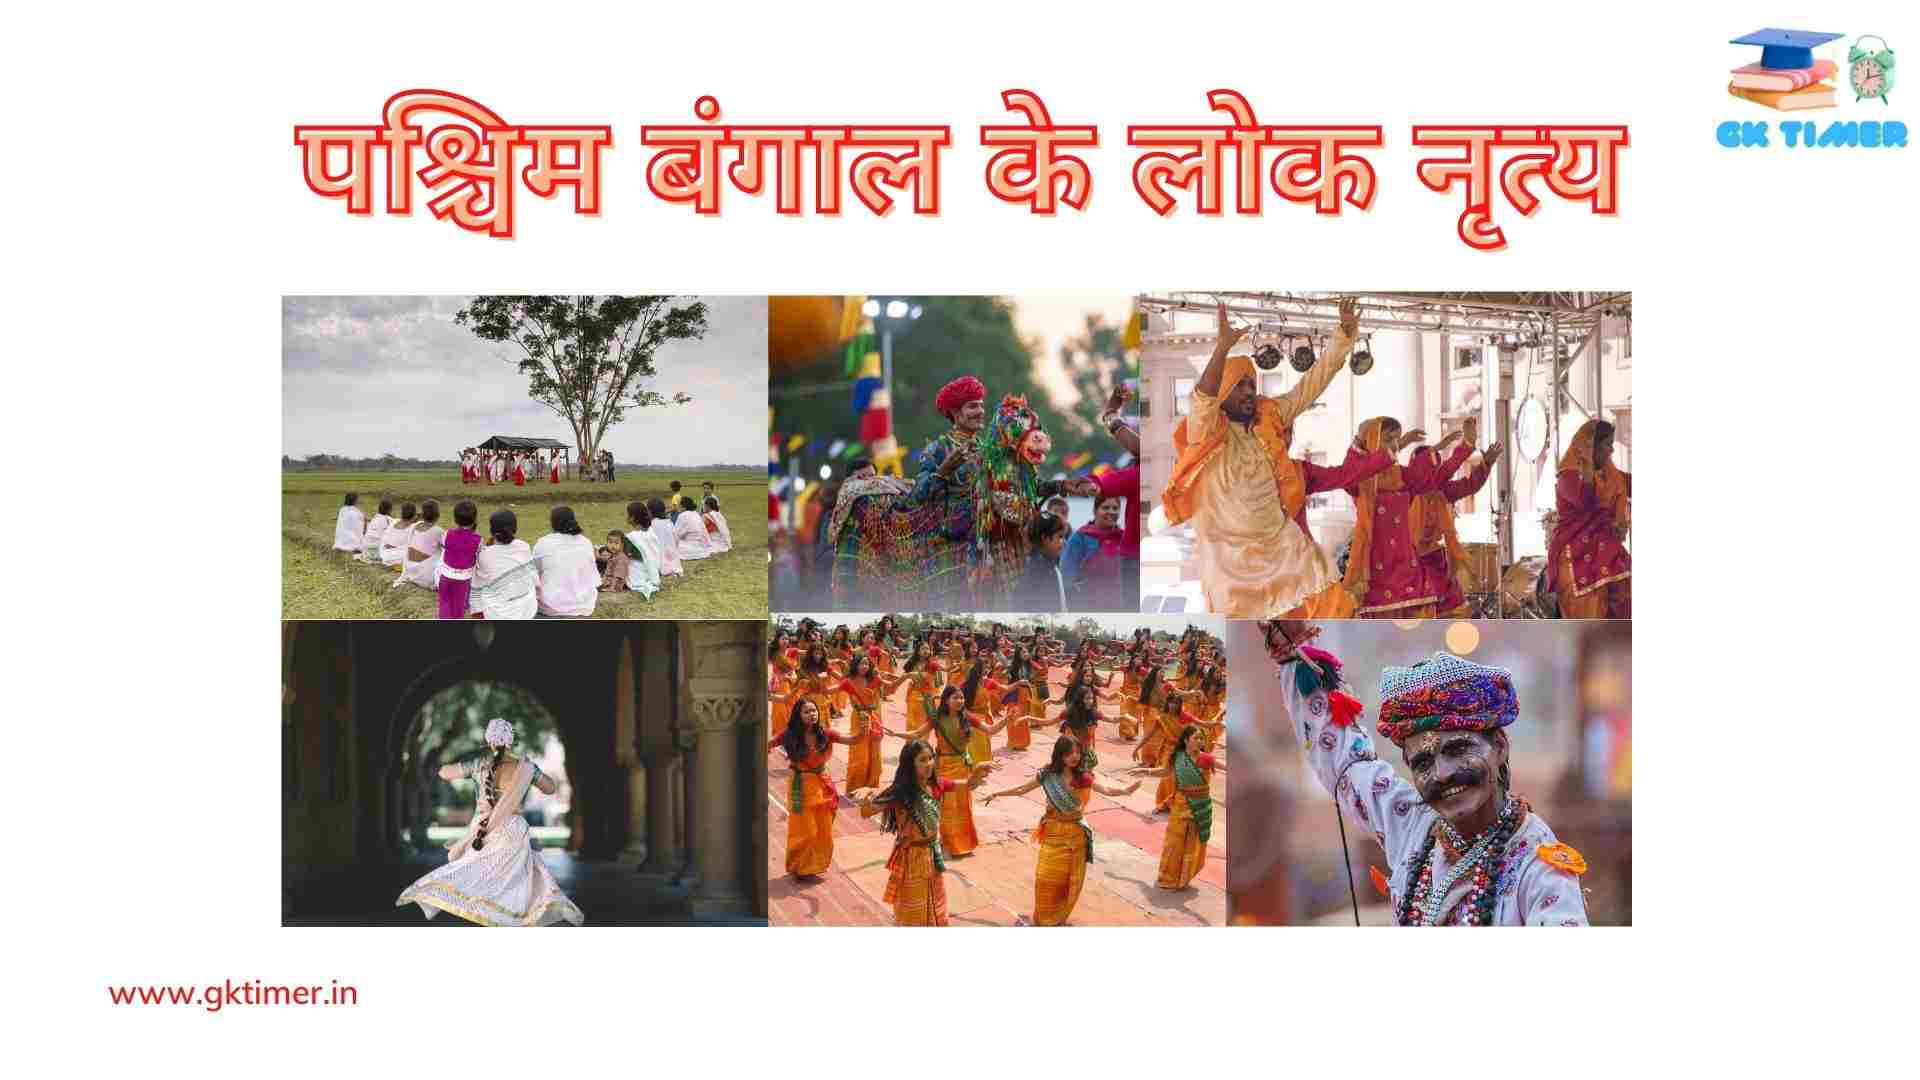 पश्चिम बंगाल के लोक नृत्य(गंभीरा, कीर्तन, कुषाण, अलकप, छऊ) | Popular folk dances of West Bengal in Hindi